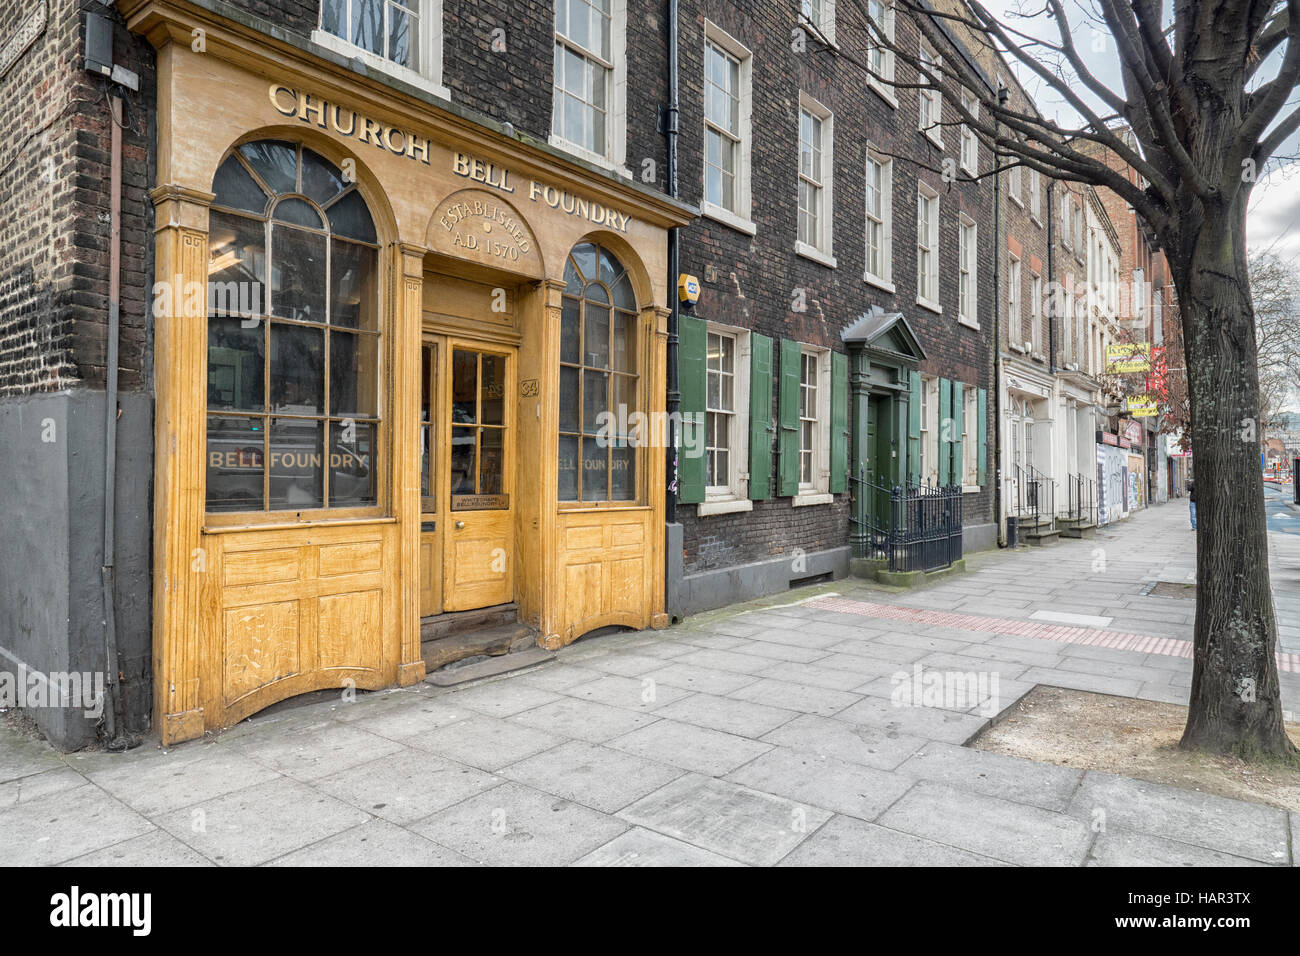 Whitechapel Bell Foundry, Whitechapel High Street près de plombiers Row, Londres East End créé en 1739 datant de 500 ans, Banque D'Images